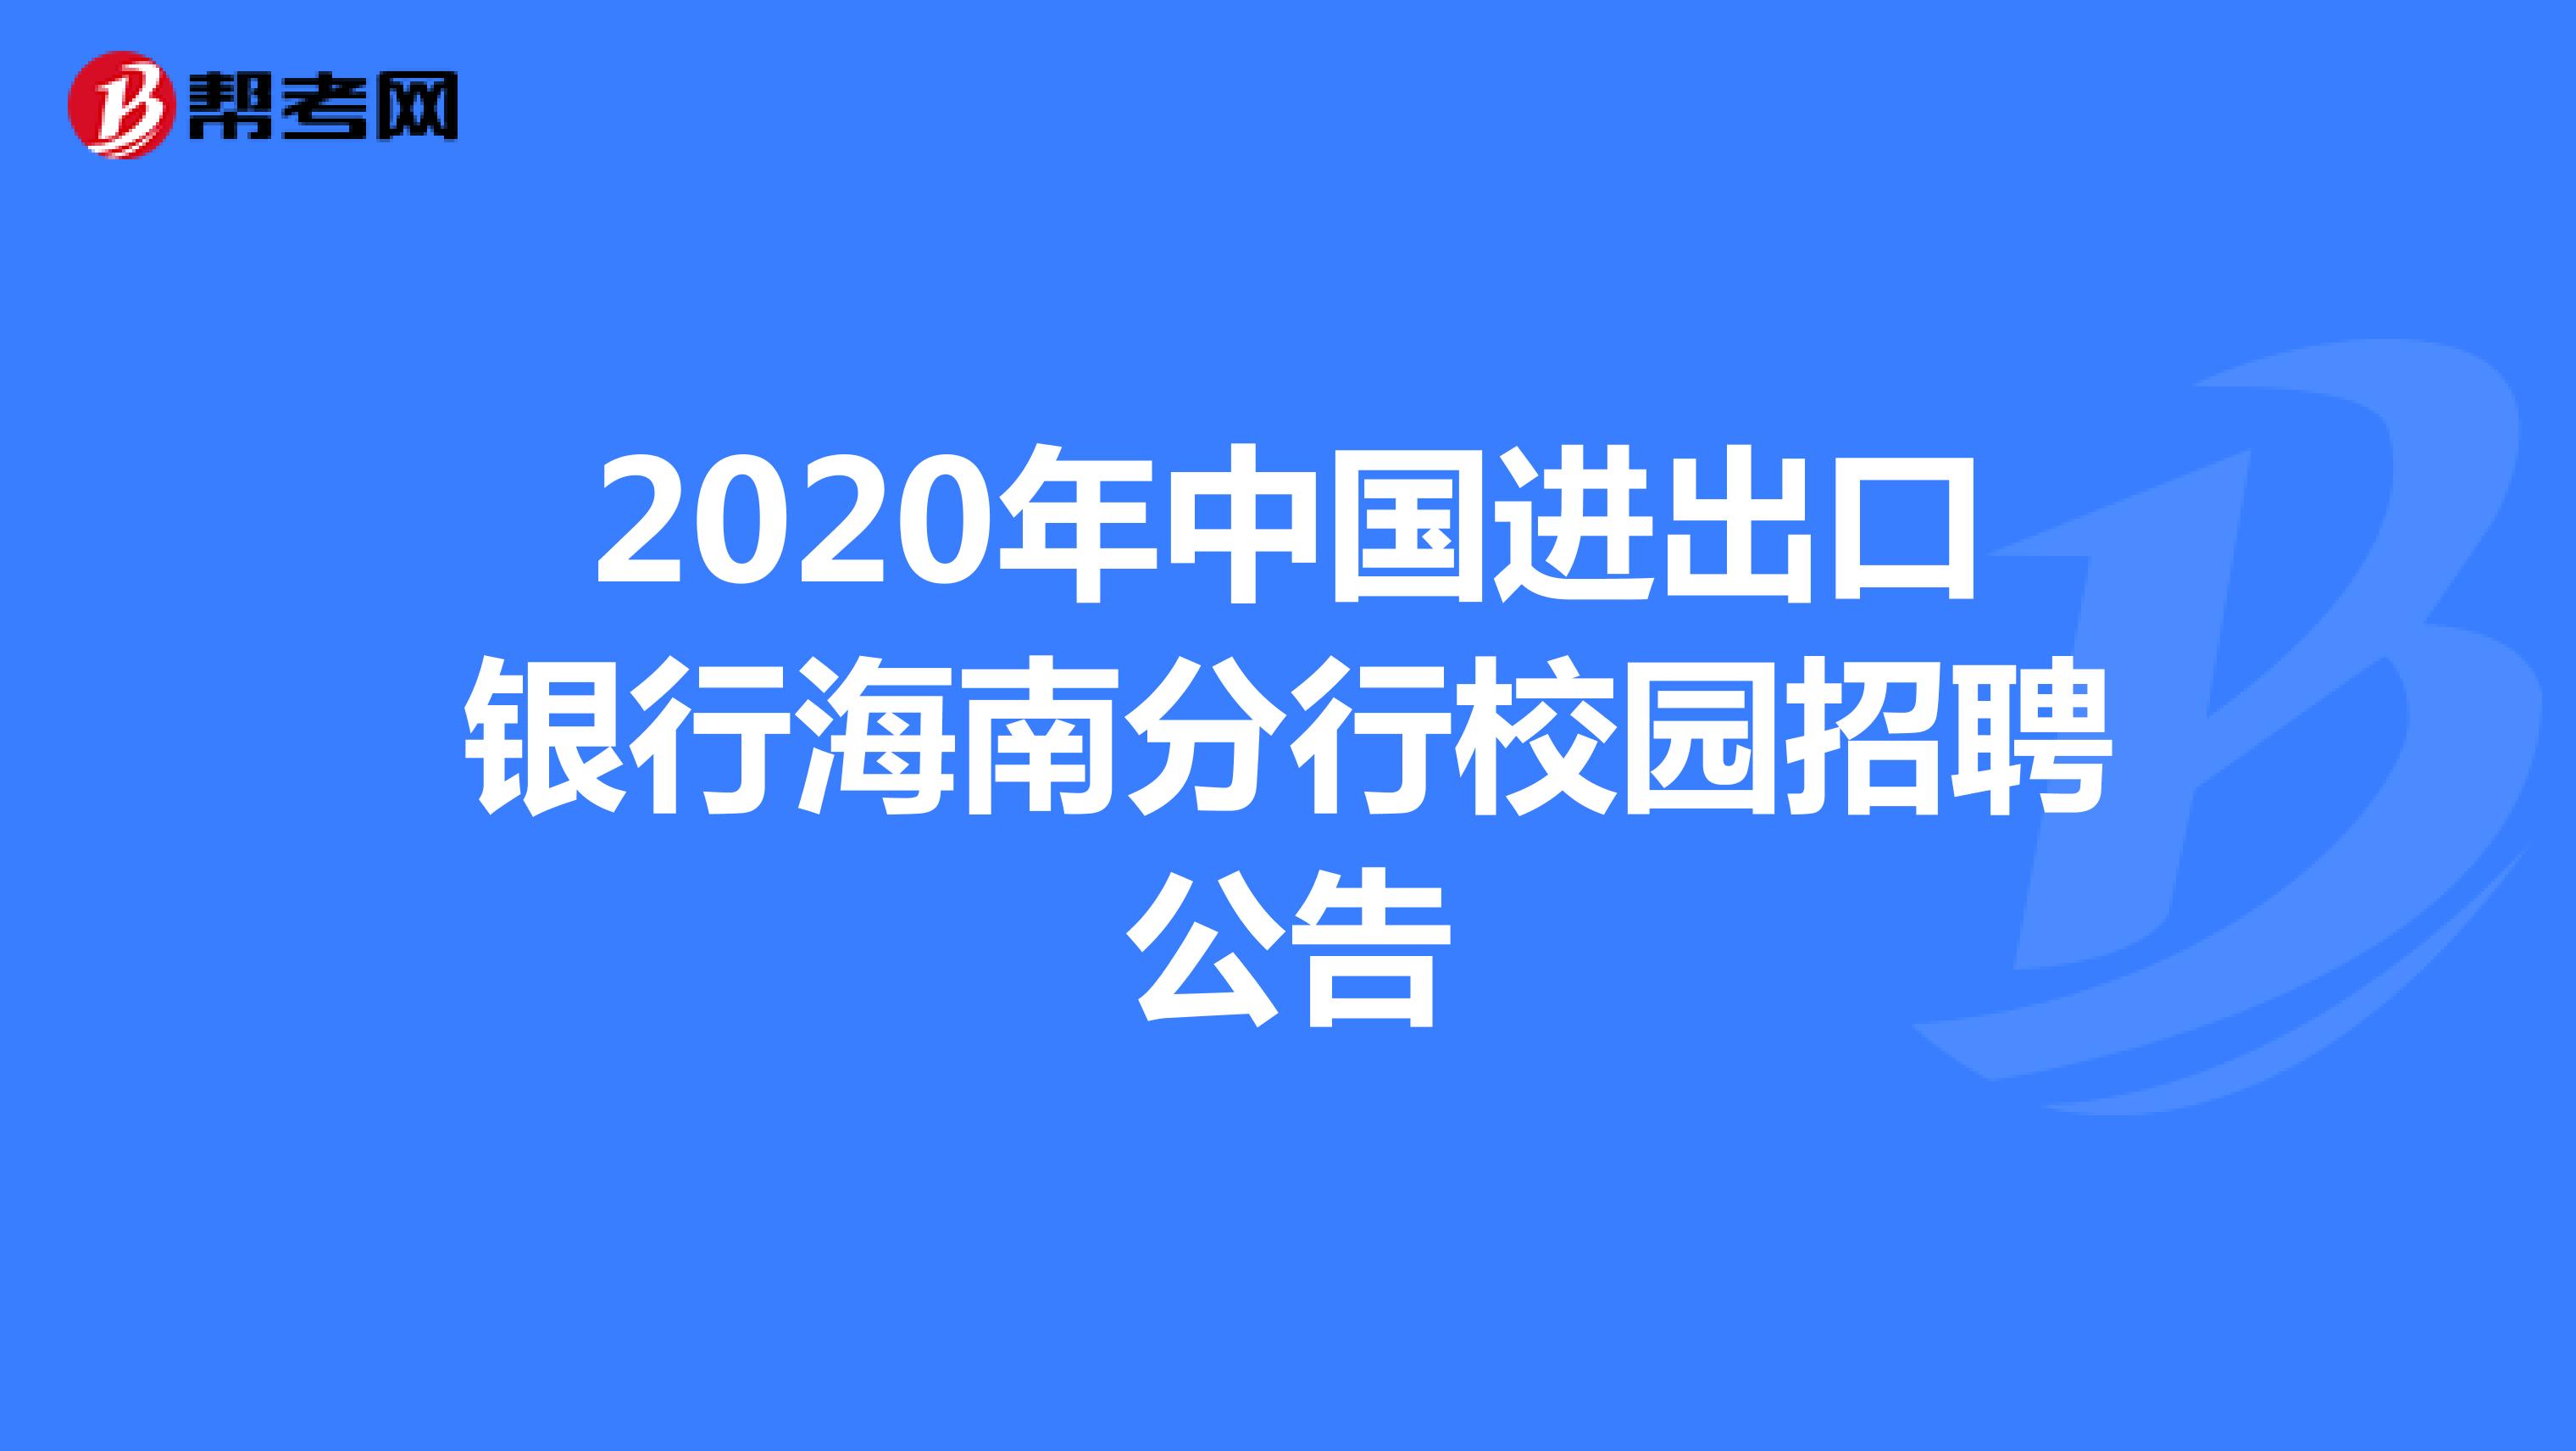 2020年中国进出口银行海南分行校园招聘公告